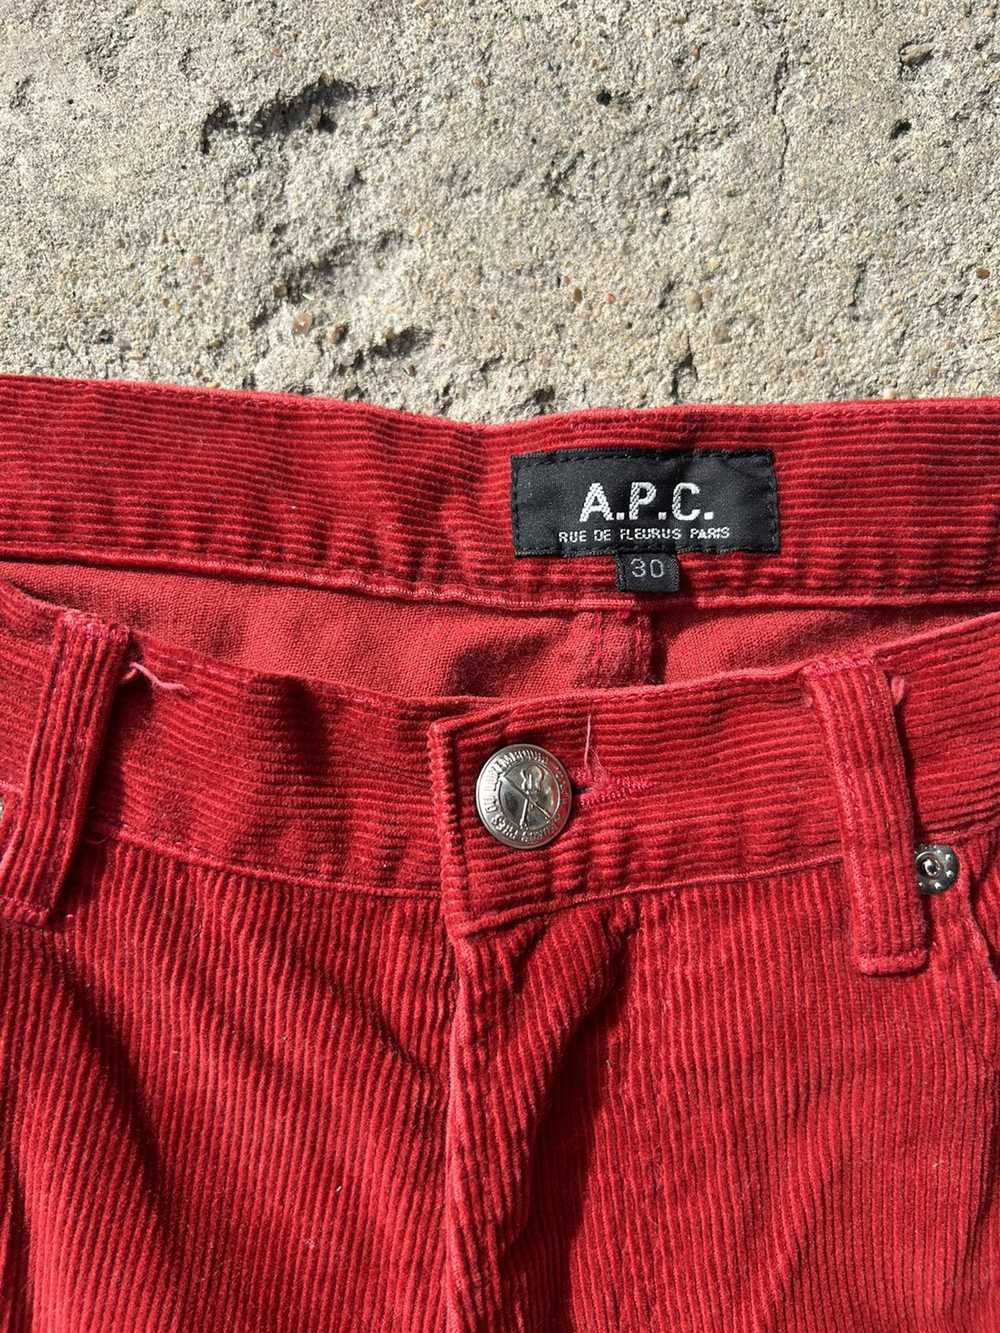 A.P.C. A.P.C 2000 RED CORDUROY pants - image 2